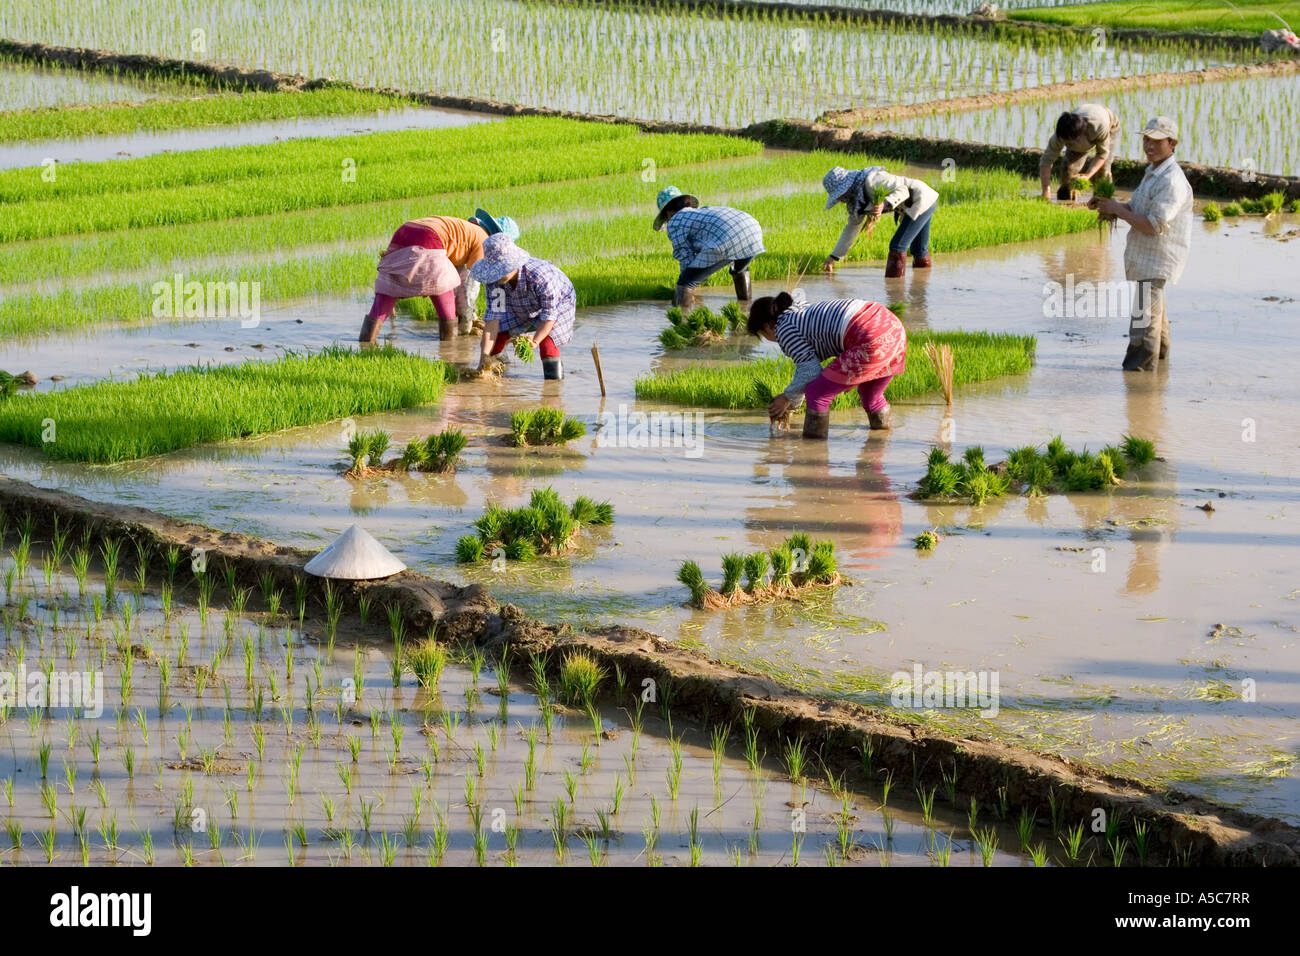 Les agriculteurs chinois le repiquage du riz dans les champs Jinghong, Chine Banque D'Images